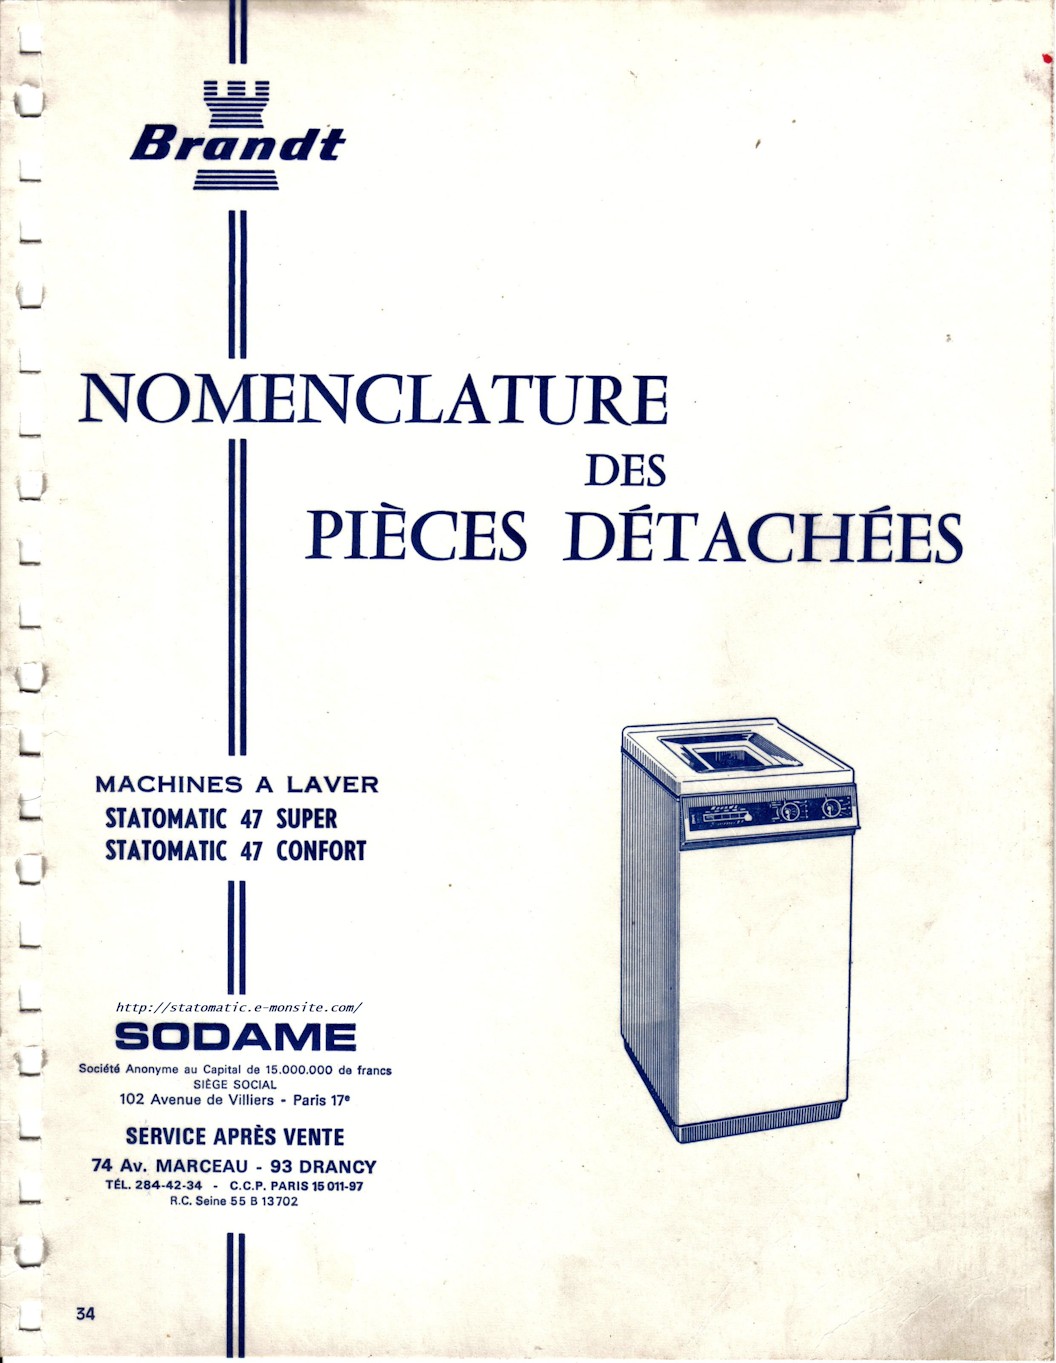 Machines à laver Brandt Statomatic 47 Super, 47 Confort et 48 , nomenclature des pièces détachées et schémas électriques